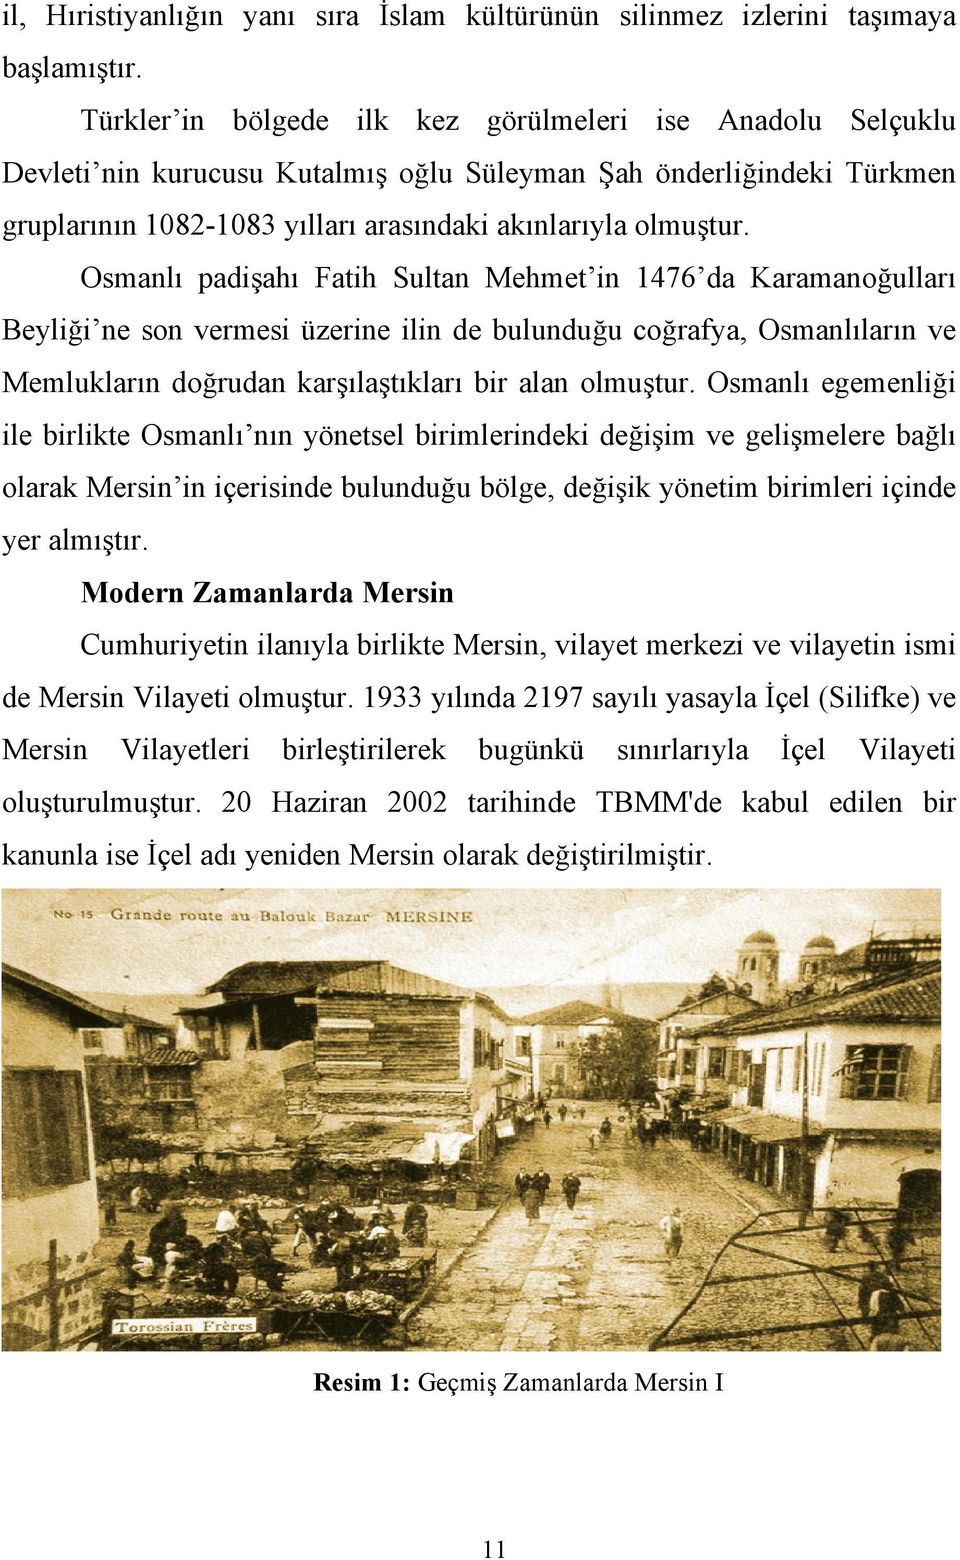 Osmanlı padişahı Fatih Sultan Mehmet in 1476 da Karamanoğulları Beyliği ne son vermesi üzerine ilin de bulunduğu coğrafya, Osmanlıların ve Memlukların doğrudan karşılaştıkları bir alan olmuştur.